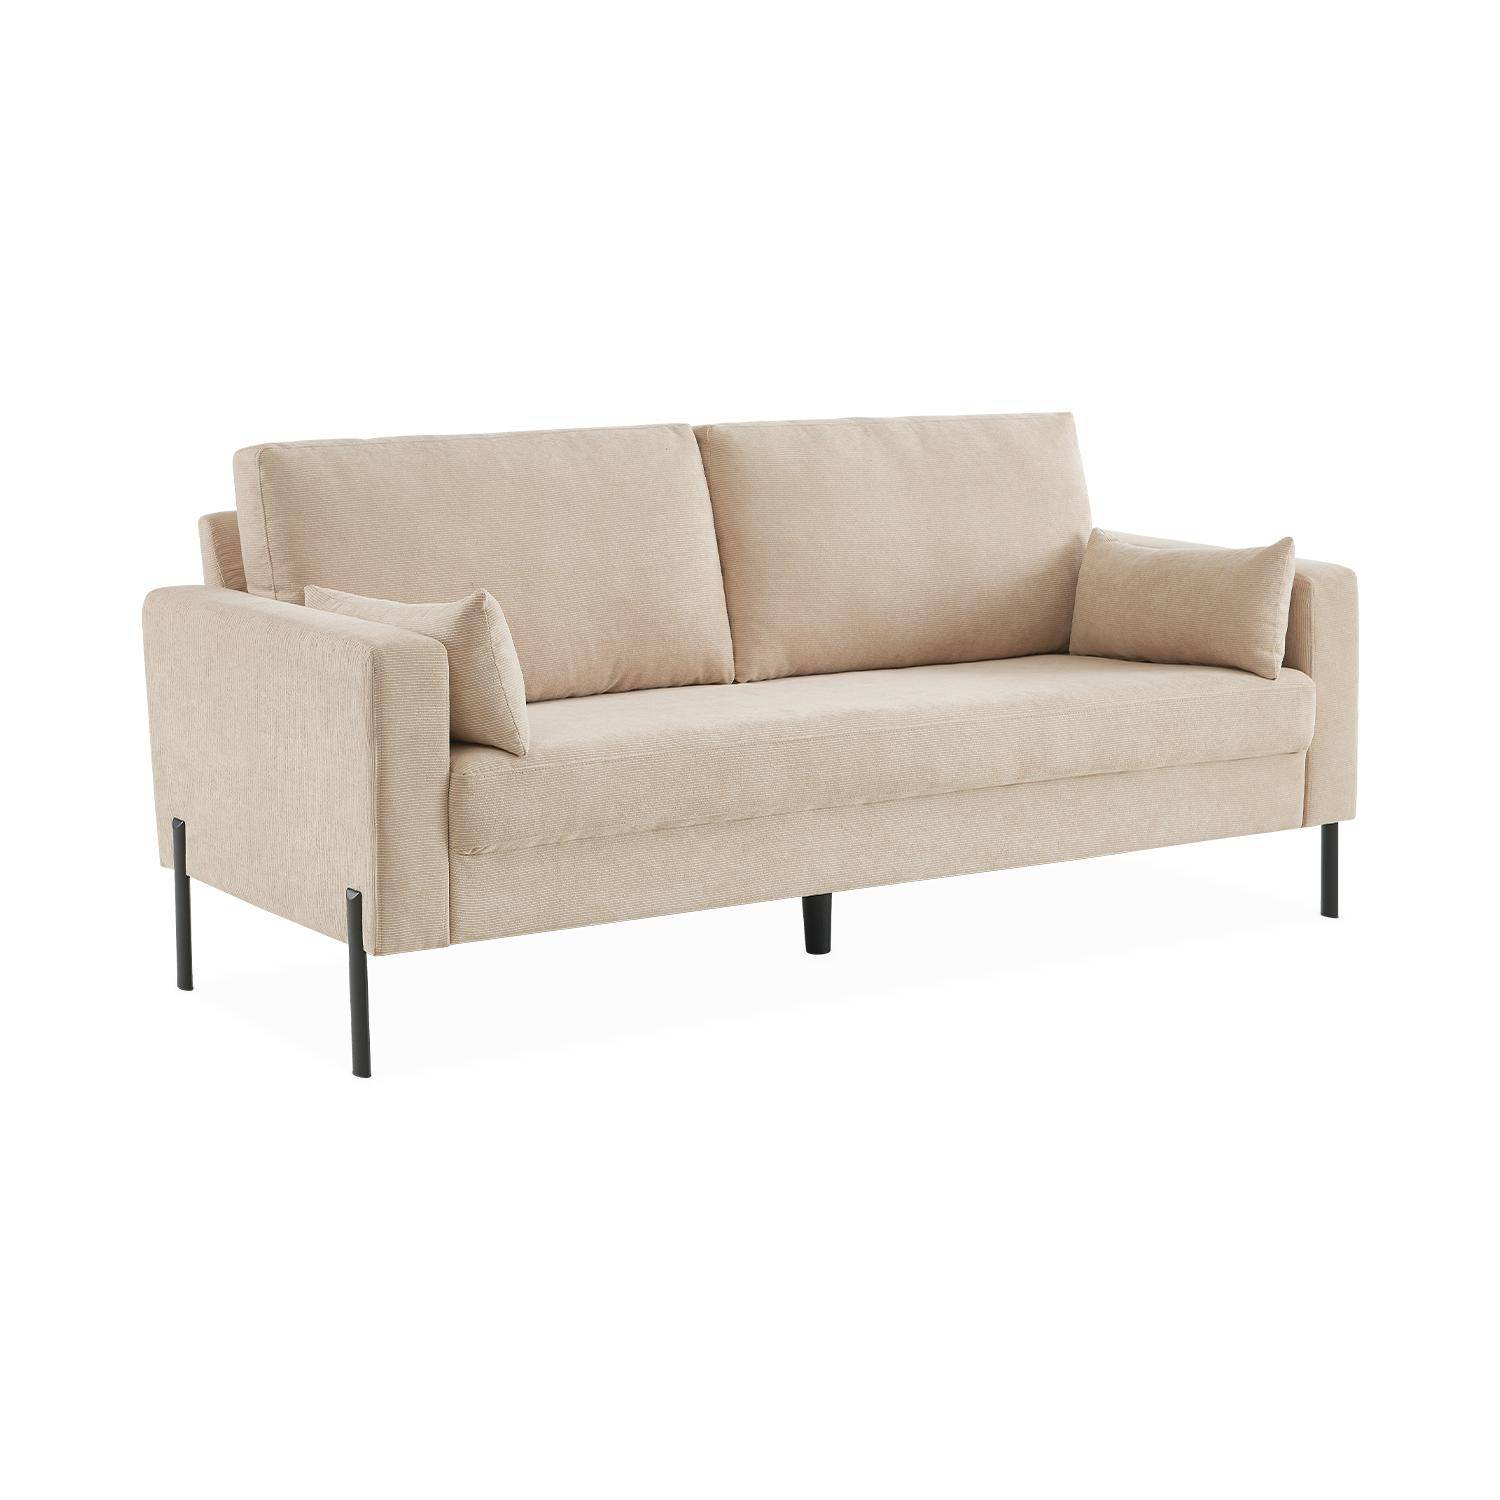 Large 3-seater living room sofa - Beige Corduroy, industrial-style metal legs - Bjorn - Beige Photo3